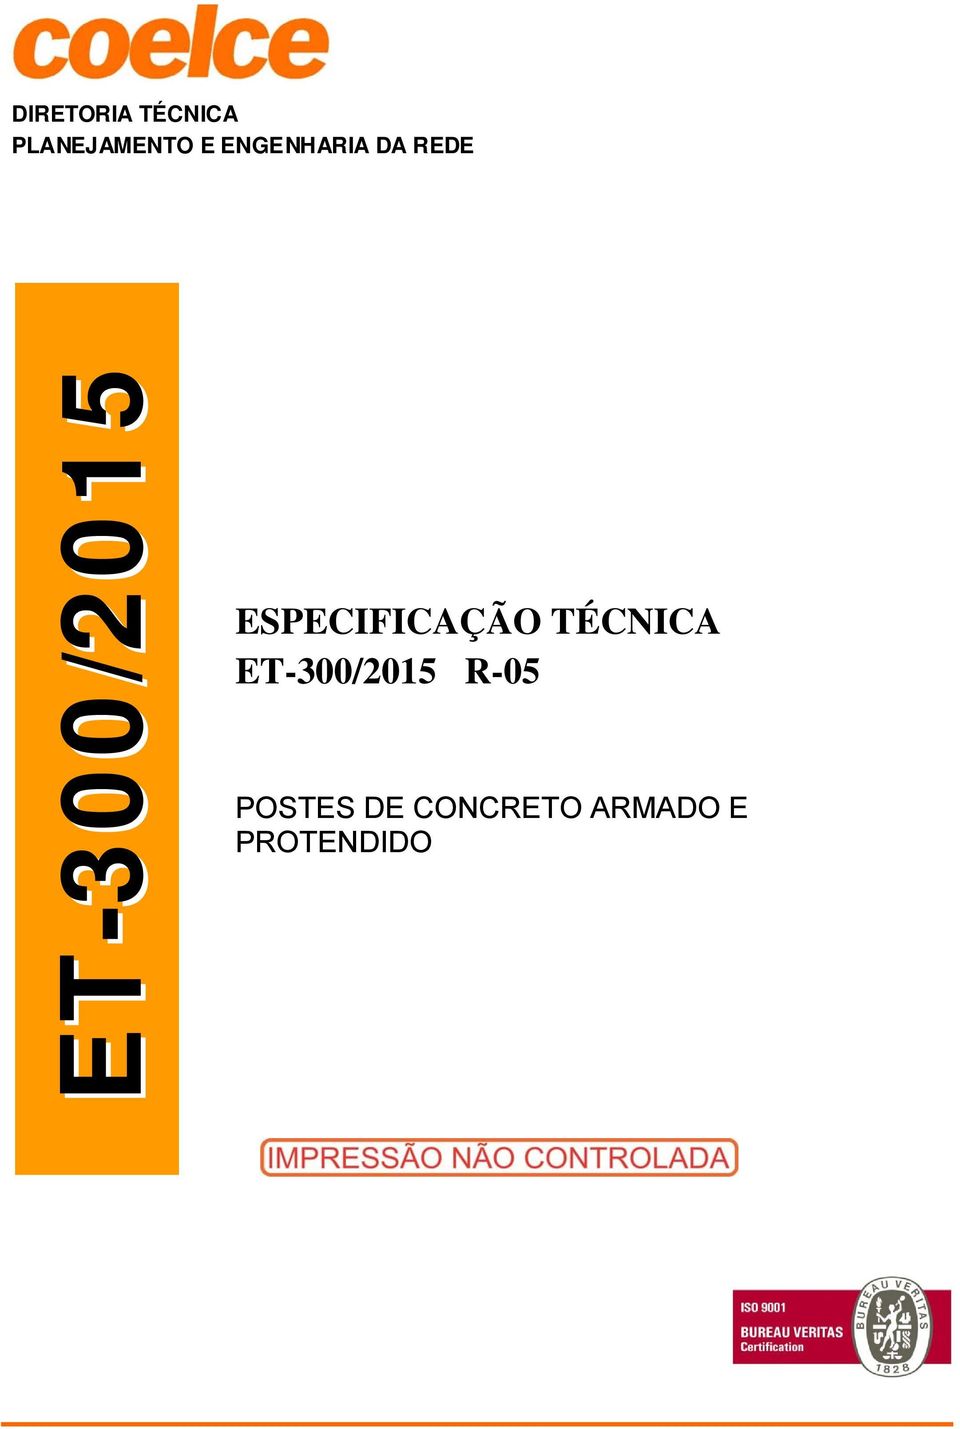 ESPECIFICAÇÃO TÉCNICA ET-300/2015